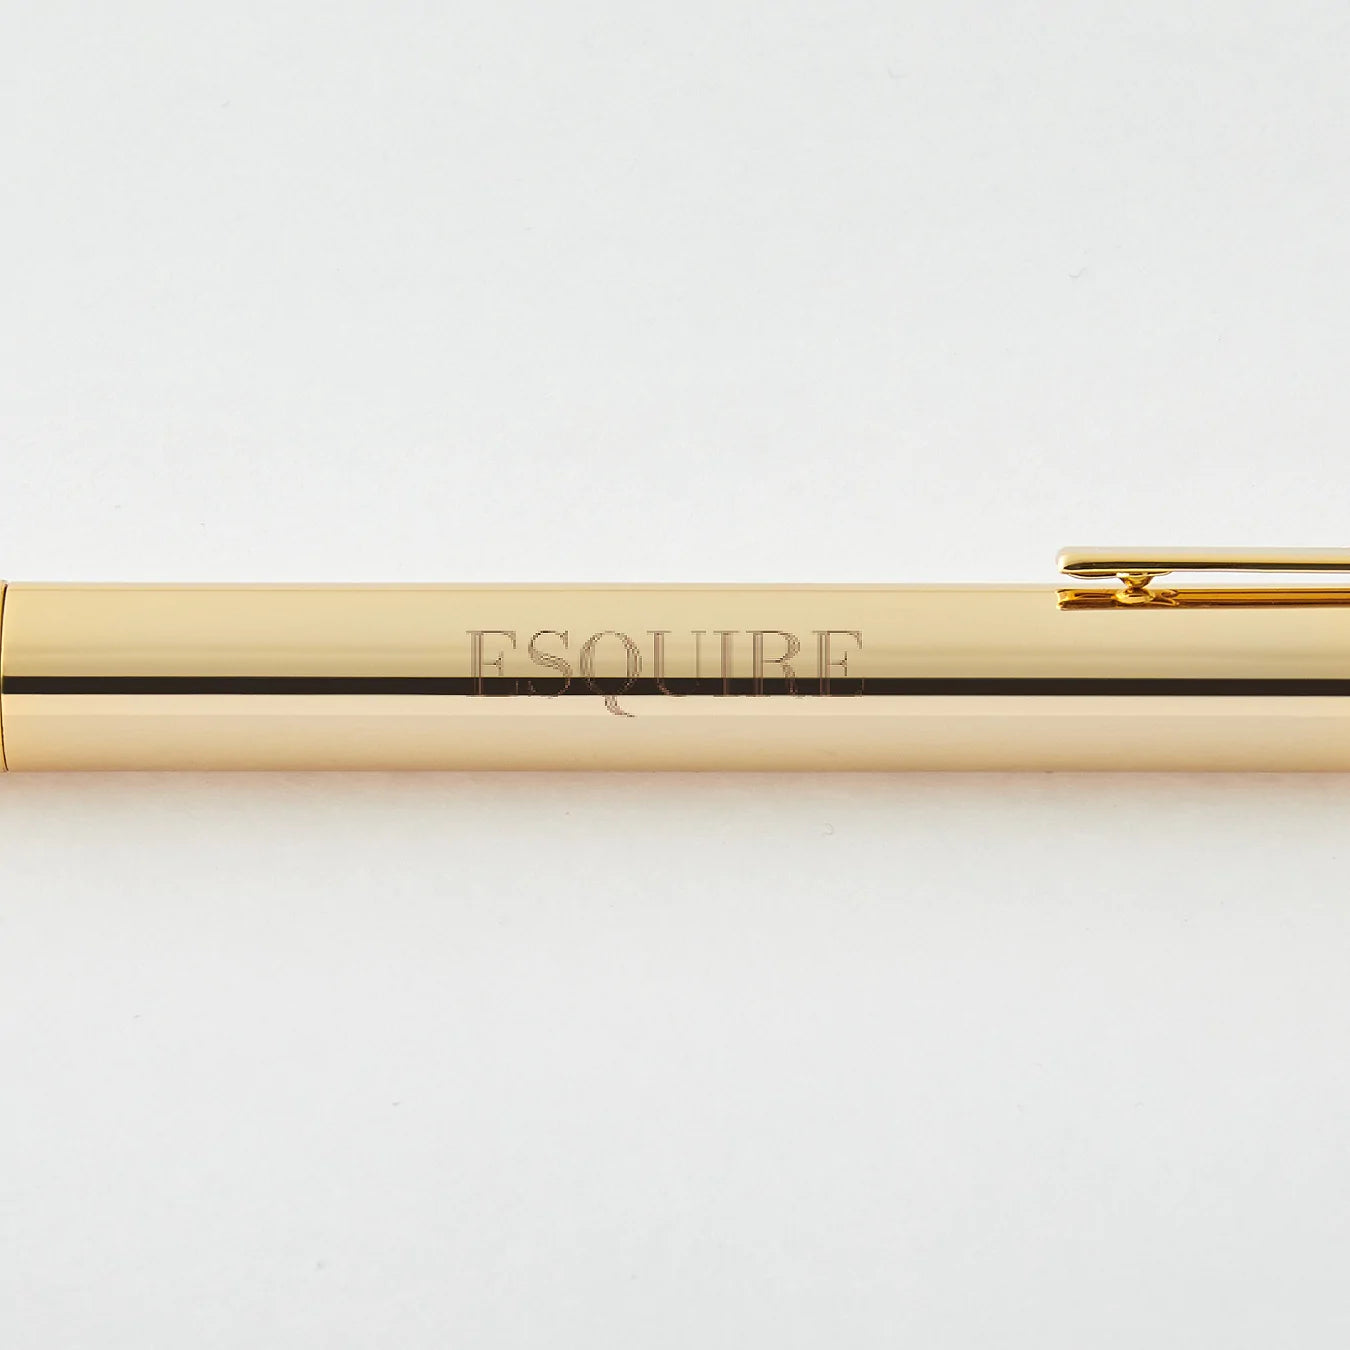 Esquire Pen and Black Legal Pad Bundle